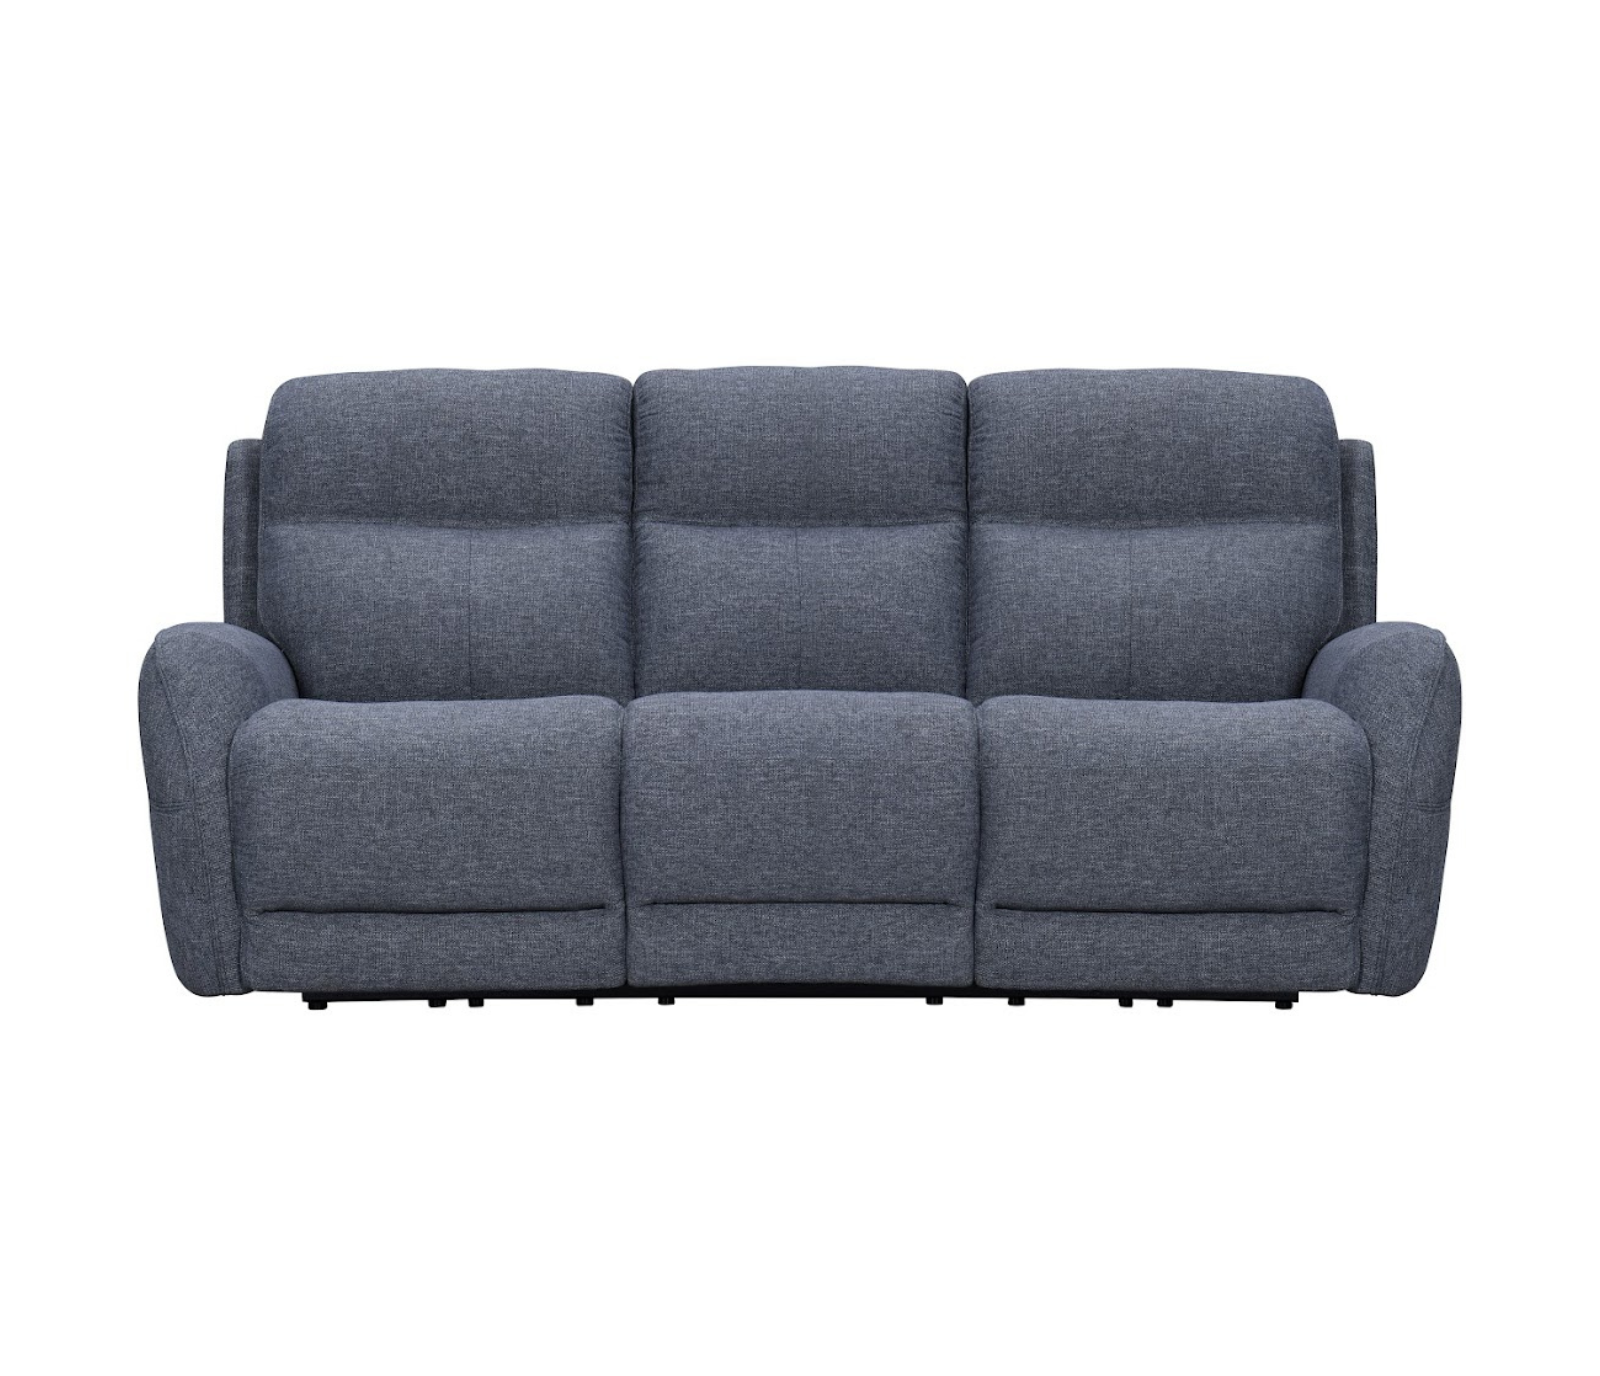 Brady Sofa - Power Reclining w/ Power Headrests - Slate Fabric